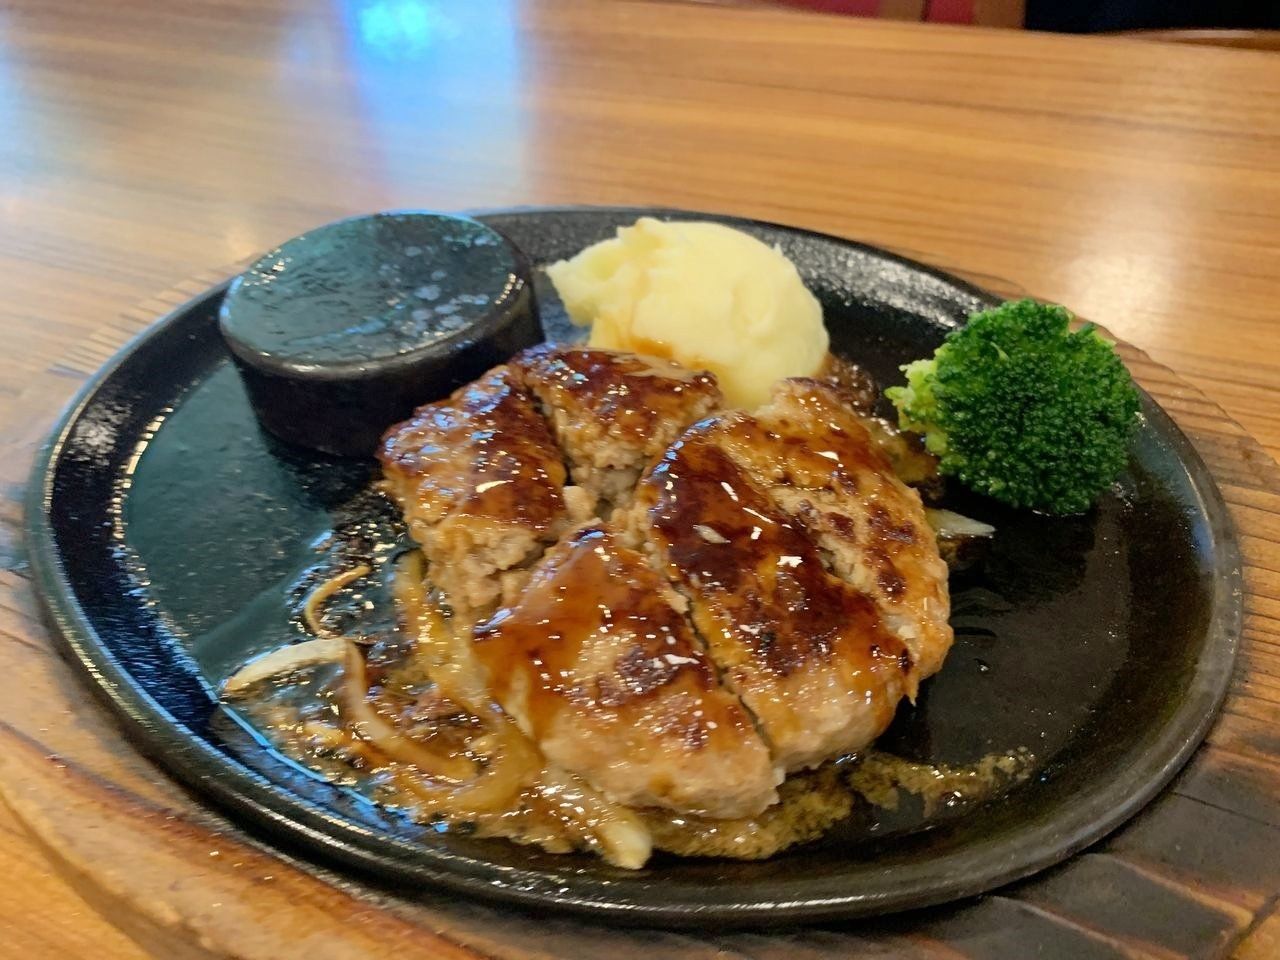 【三郷市食べ歩きブログ】「ステーキのあさくま三郷店」へ